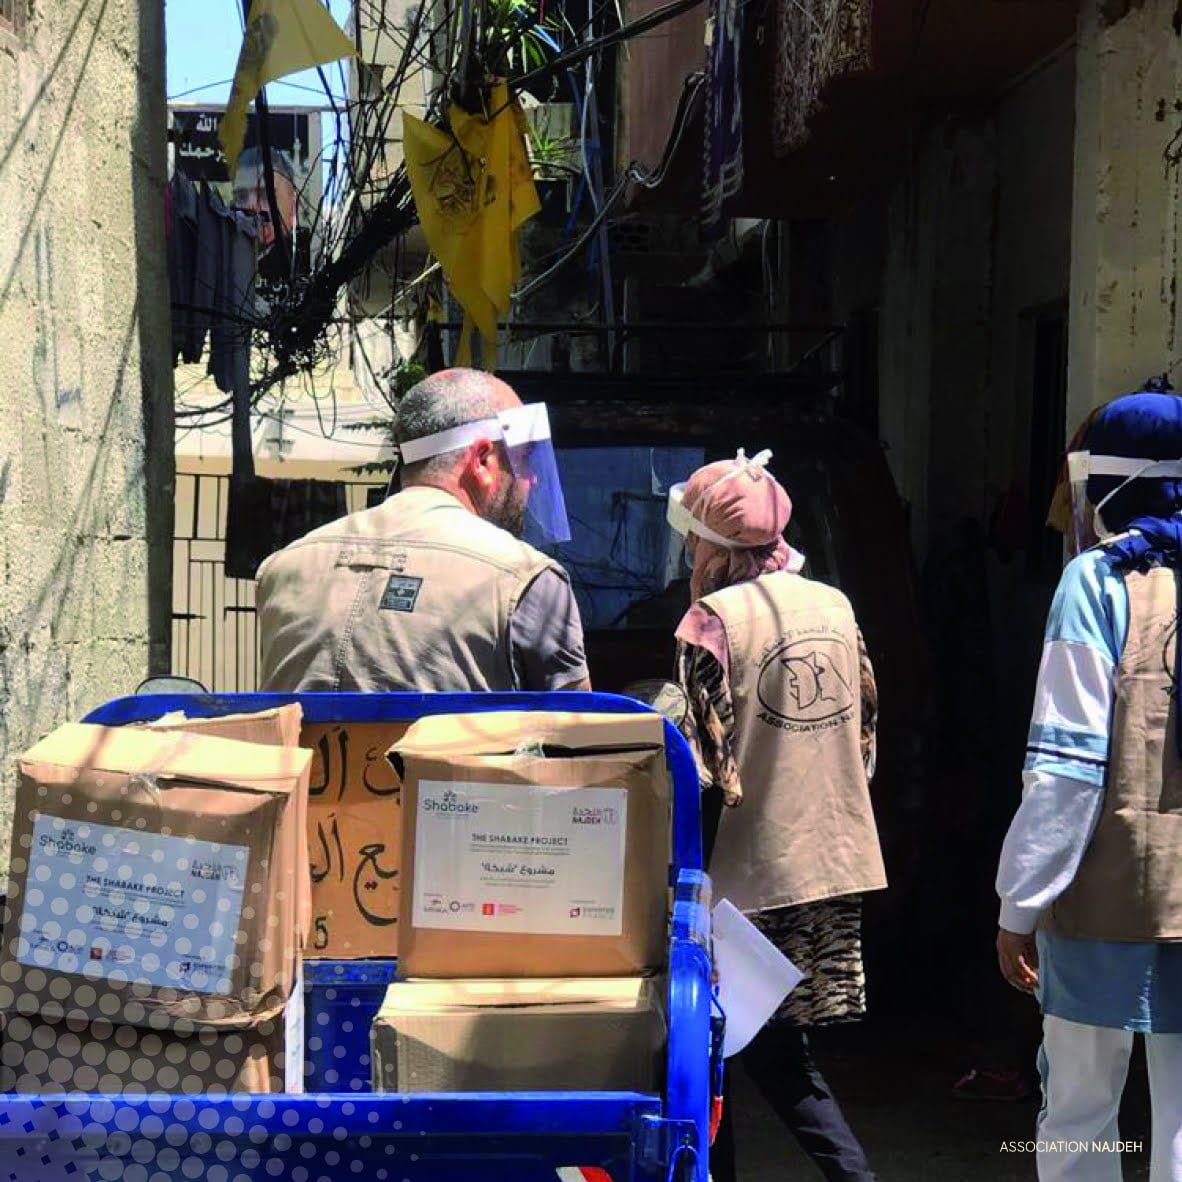 للمساهمة قدر المستطاع في تأمين الحاجات الأساسية للاجئين الفلسطينيين في لبنان